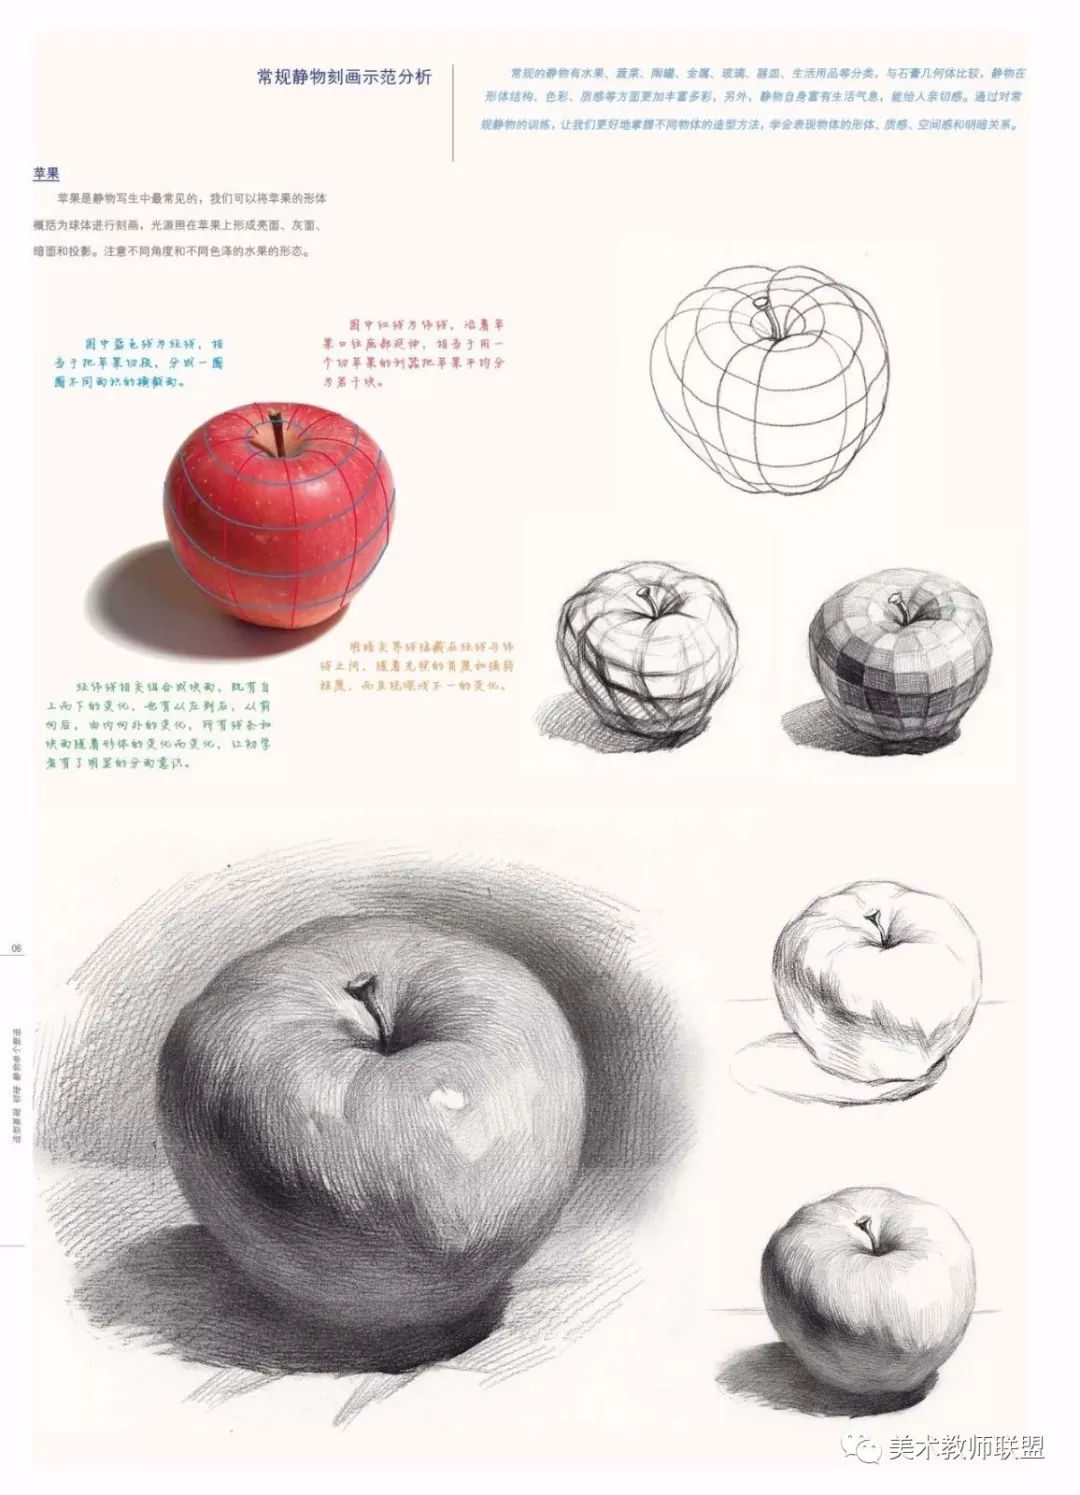 素描静物苹果 | 苹果画好了,真的可以发家致富!